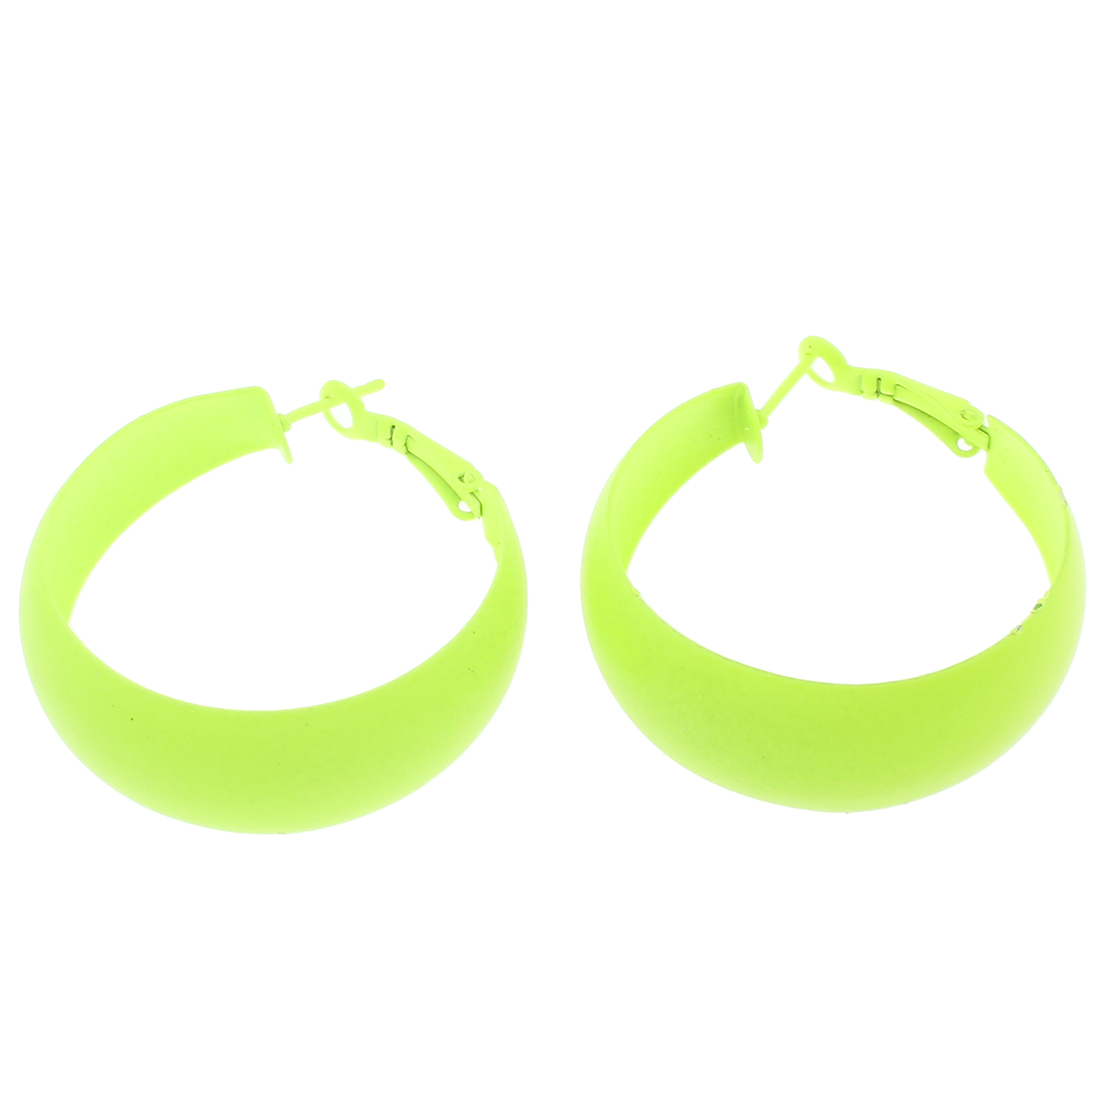 2 fluorescent green